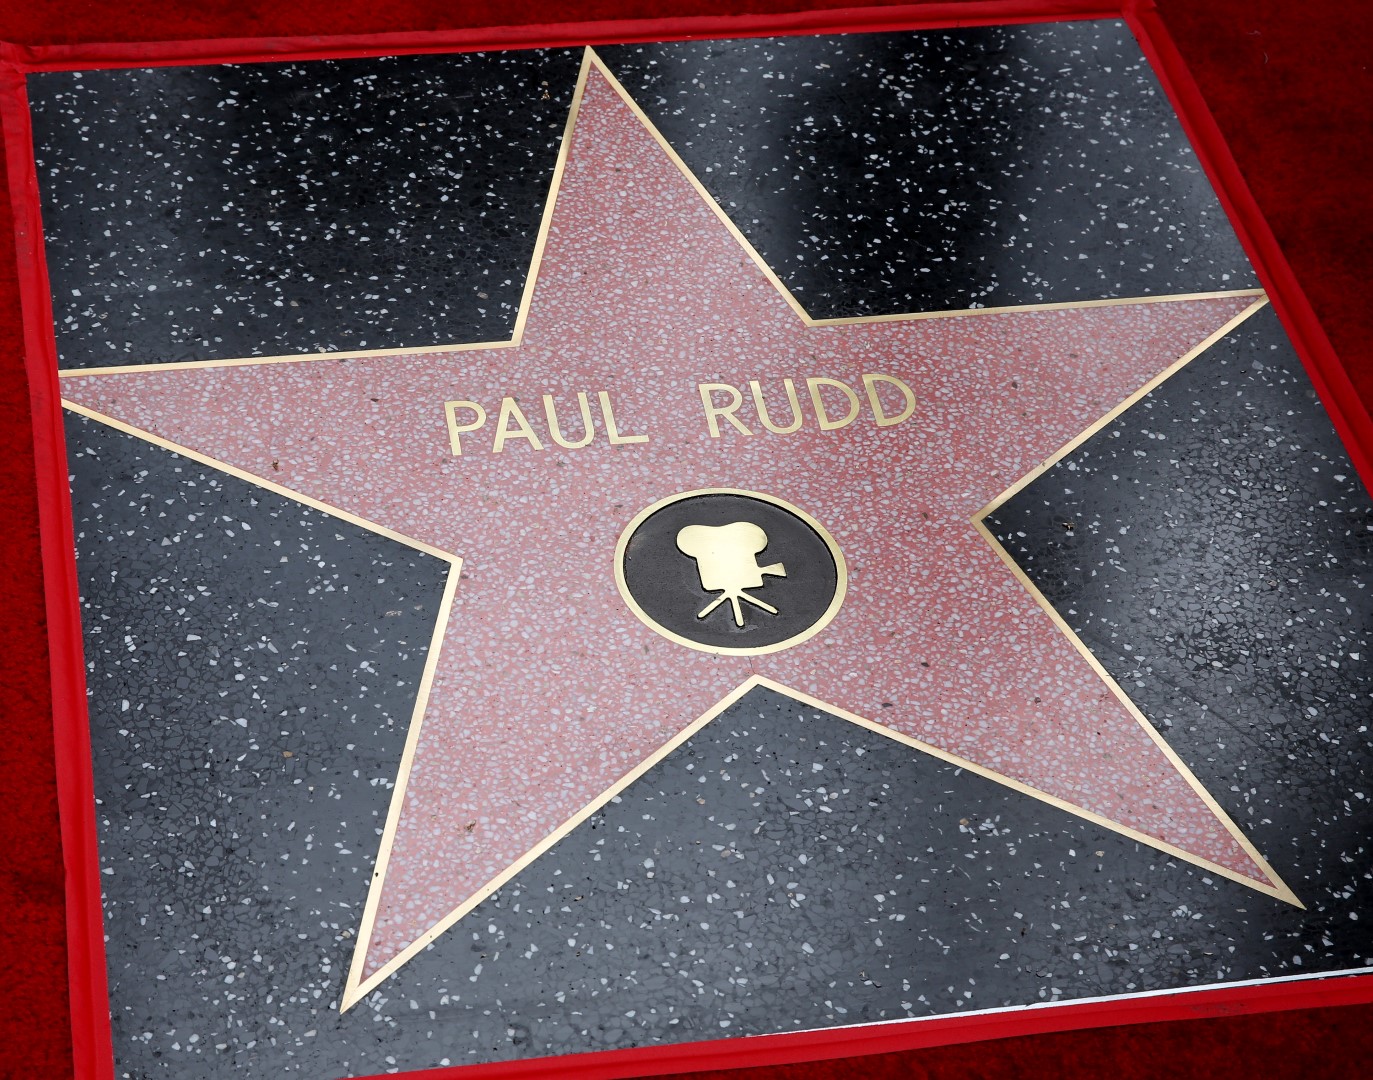 “Người Kiến” Paul Rudd vinh dự nhận ngôi sao trên Đại lộ danh vọng Hollywood - Ảnh 6